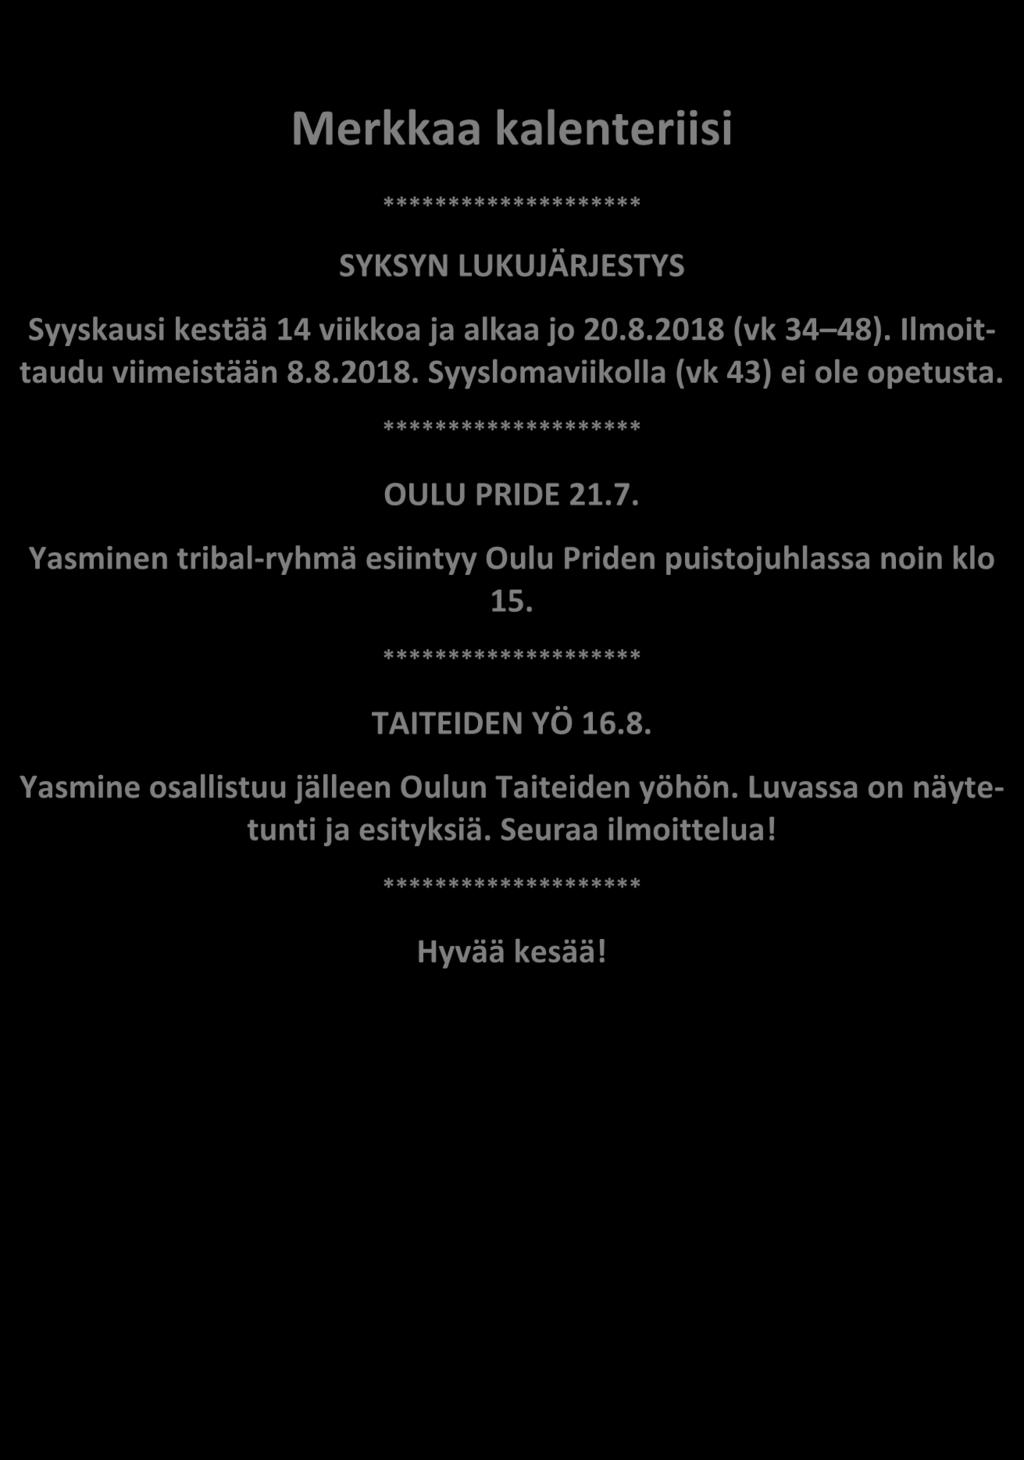 ******************** OULU PRIDE 21.7. Yasminen tribal-ryhmä esiintyy Oulu Priden puistojuhlassa noin klo 15.